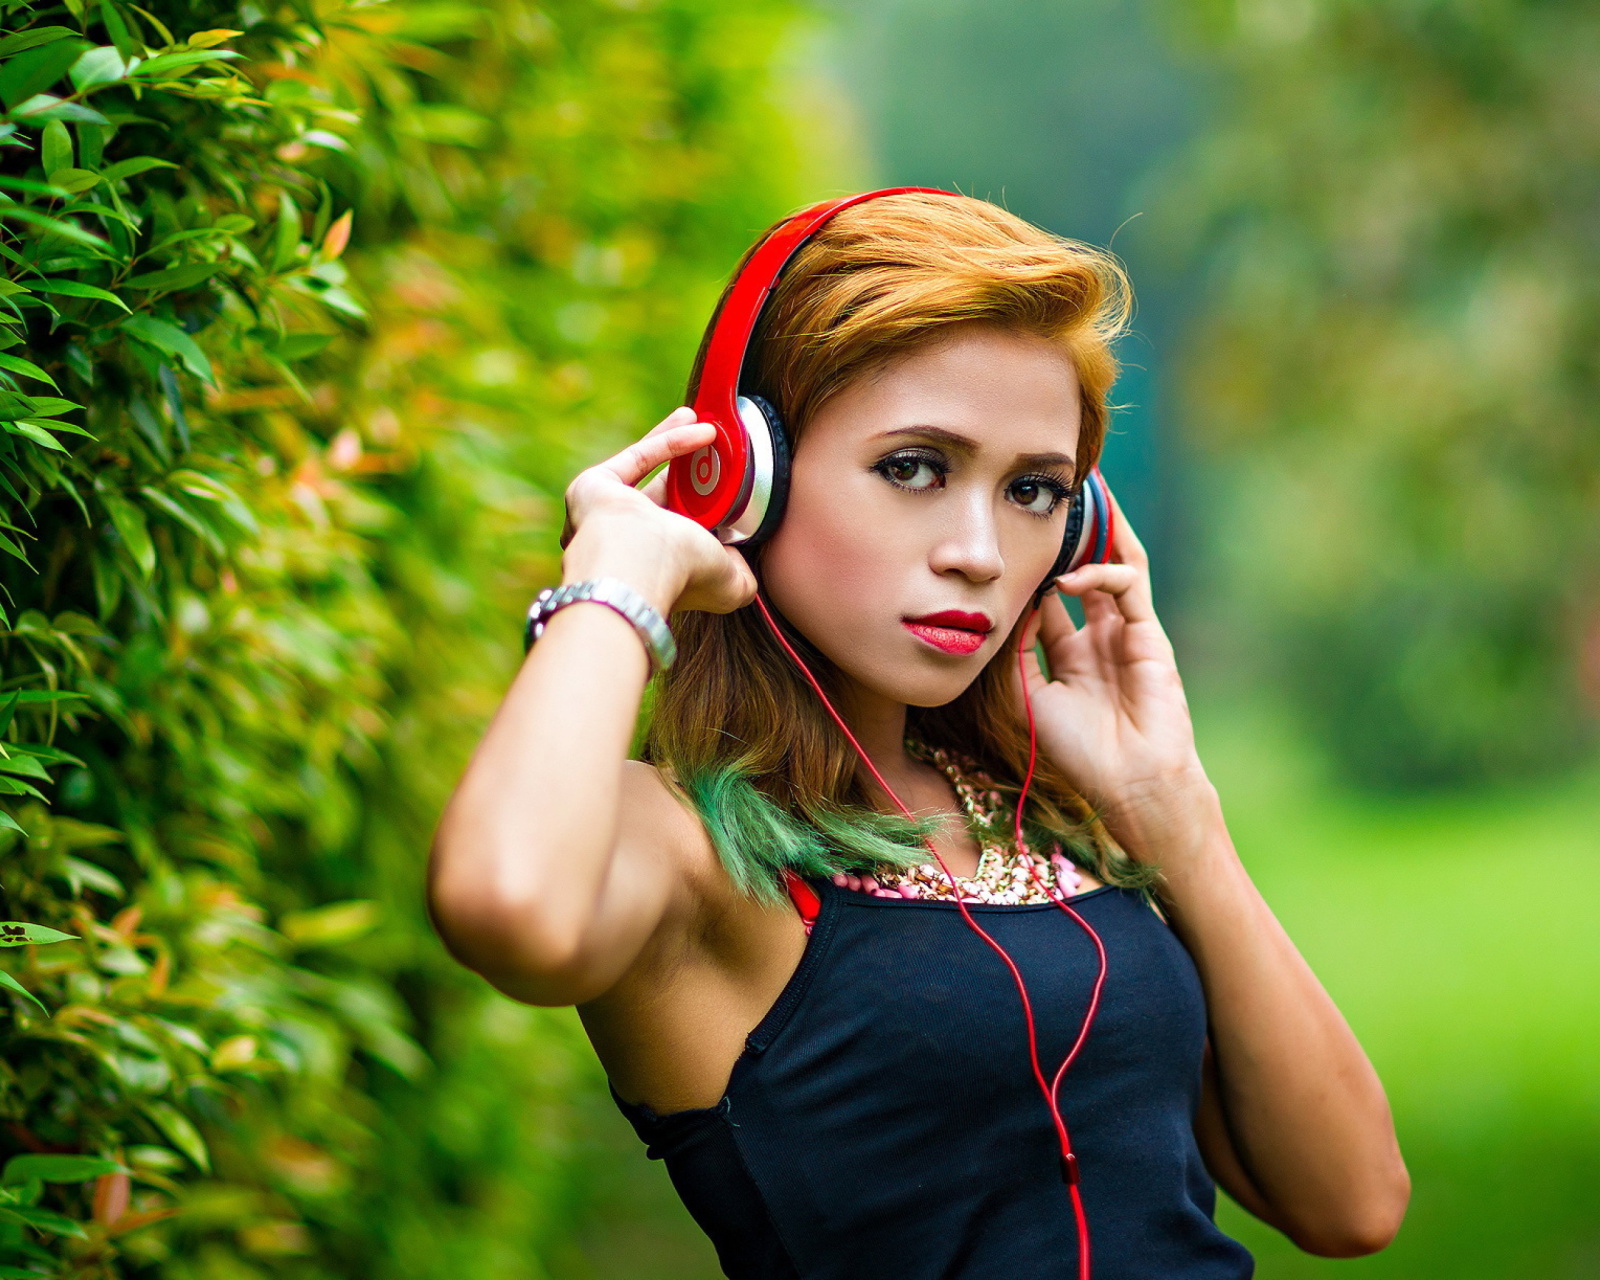 Sweet girl in headphones screenshot #1 1600x1280